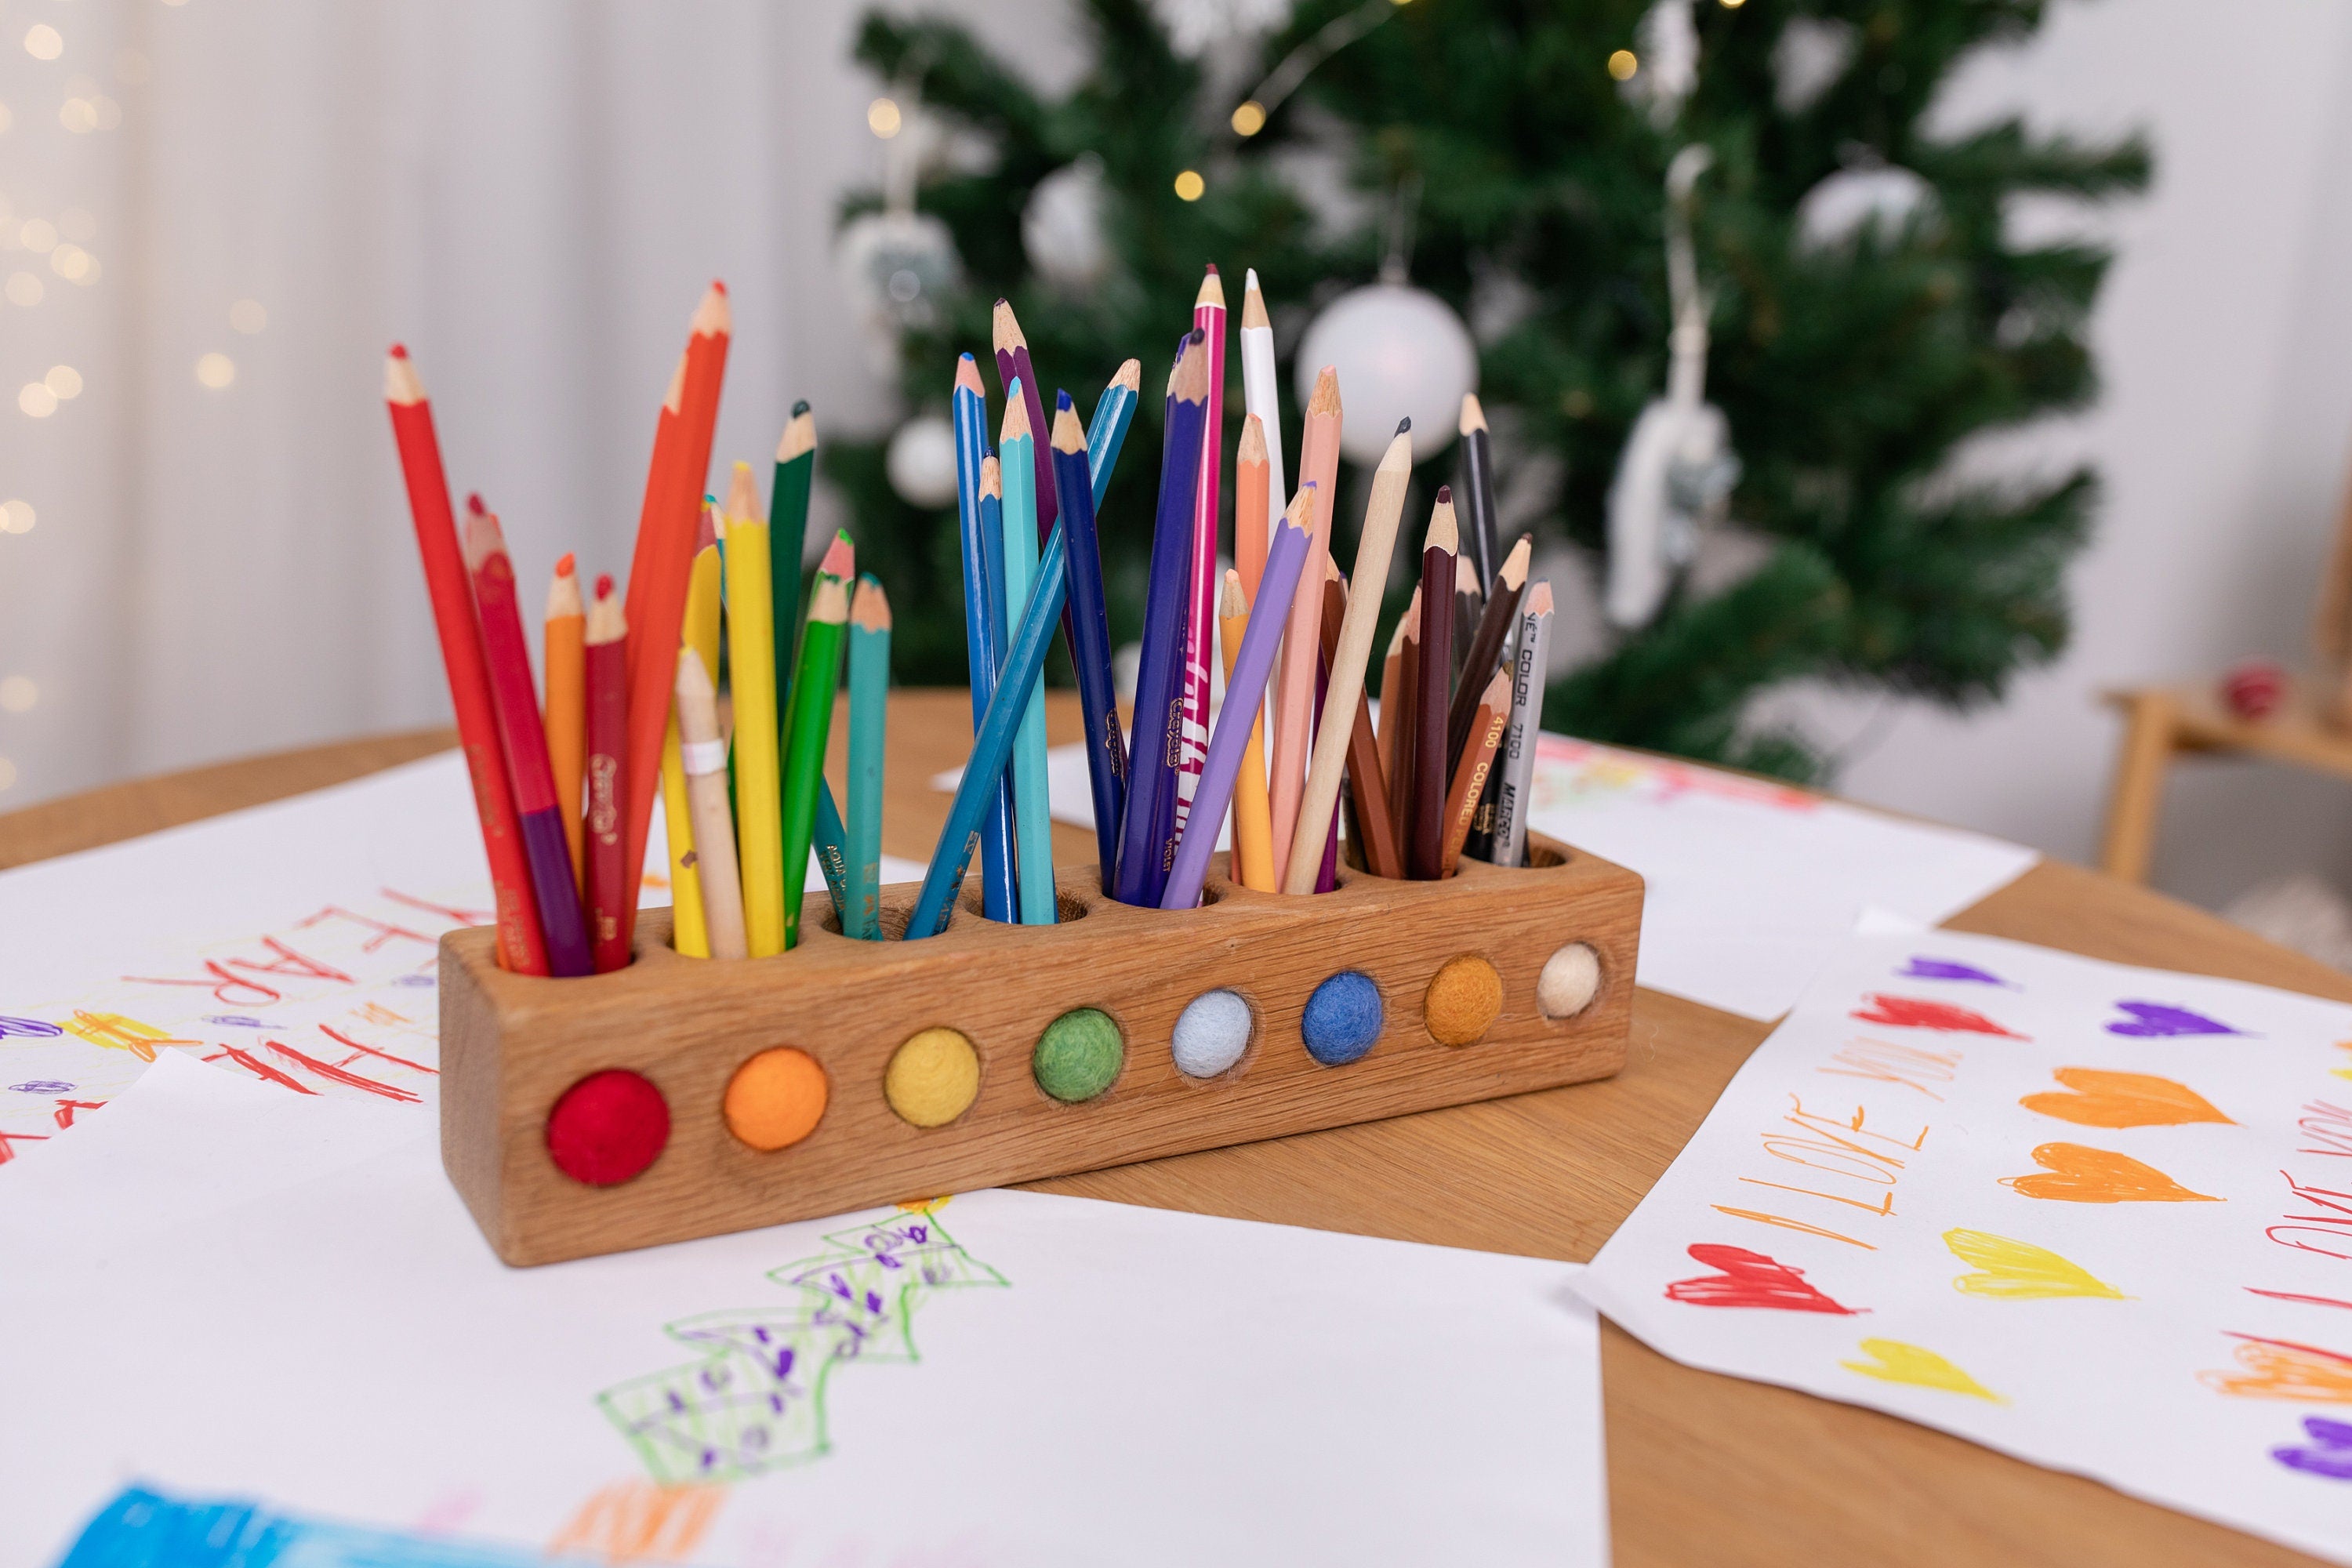 Pencil holder Montessori wood desk organizer desk decor office organizer kids artwork gift waldorf homeschool birthday gift